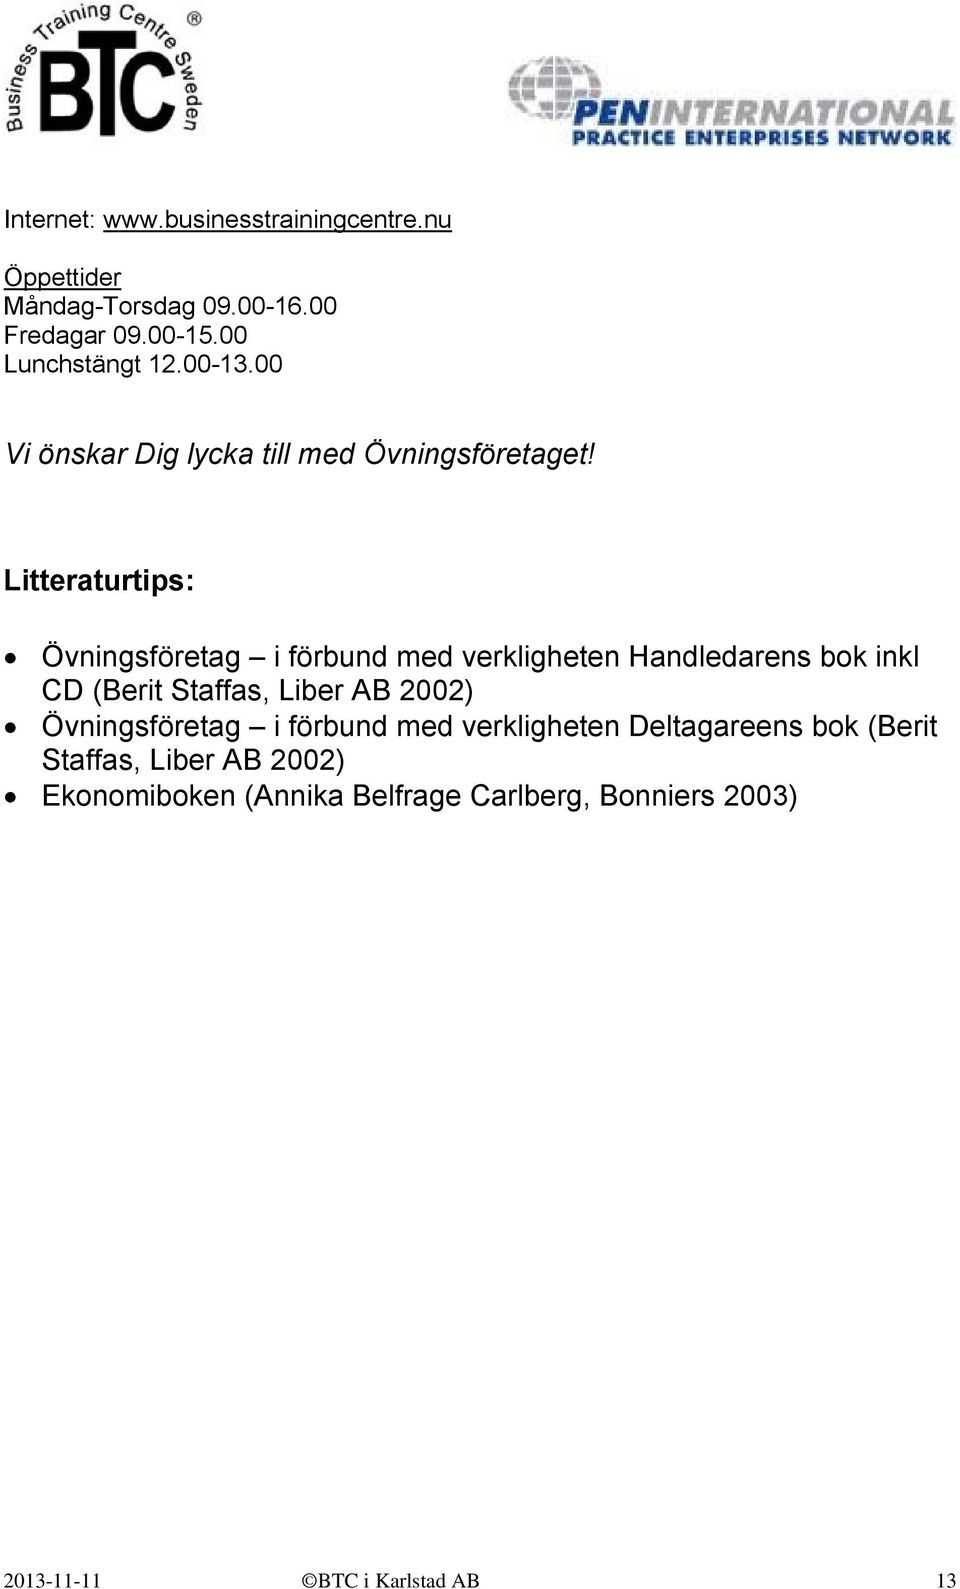 Litteraturtips: Övningsföretag i förbund med verkligheten Handledarens bok inkl CD (Berit Staffas, Liber AB 2002)